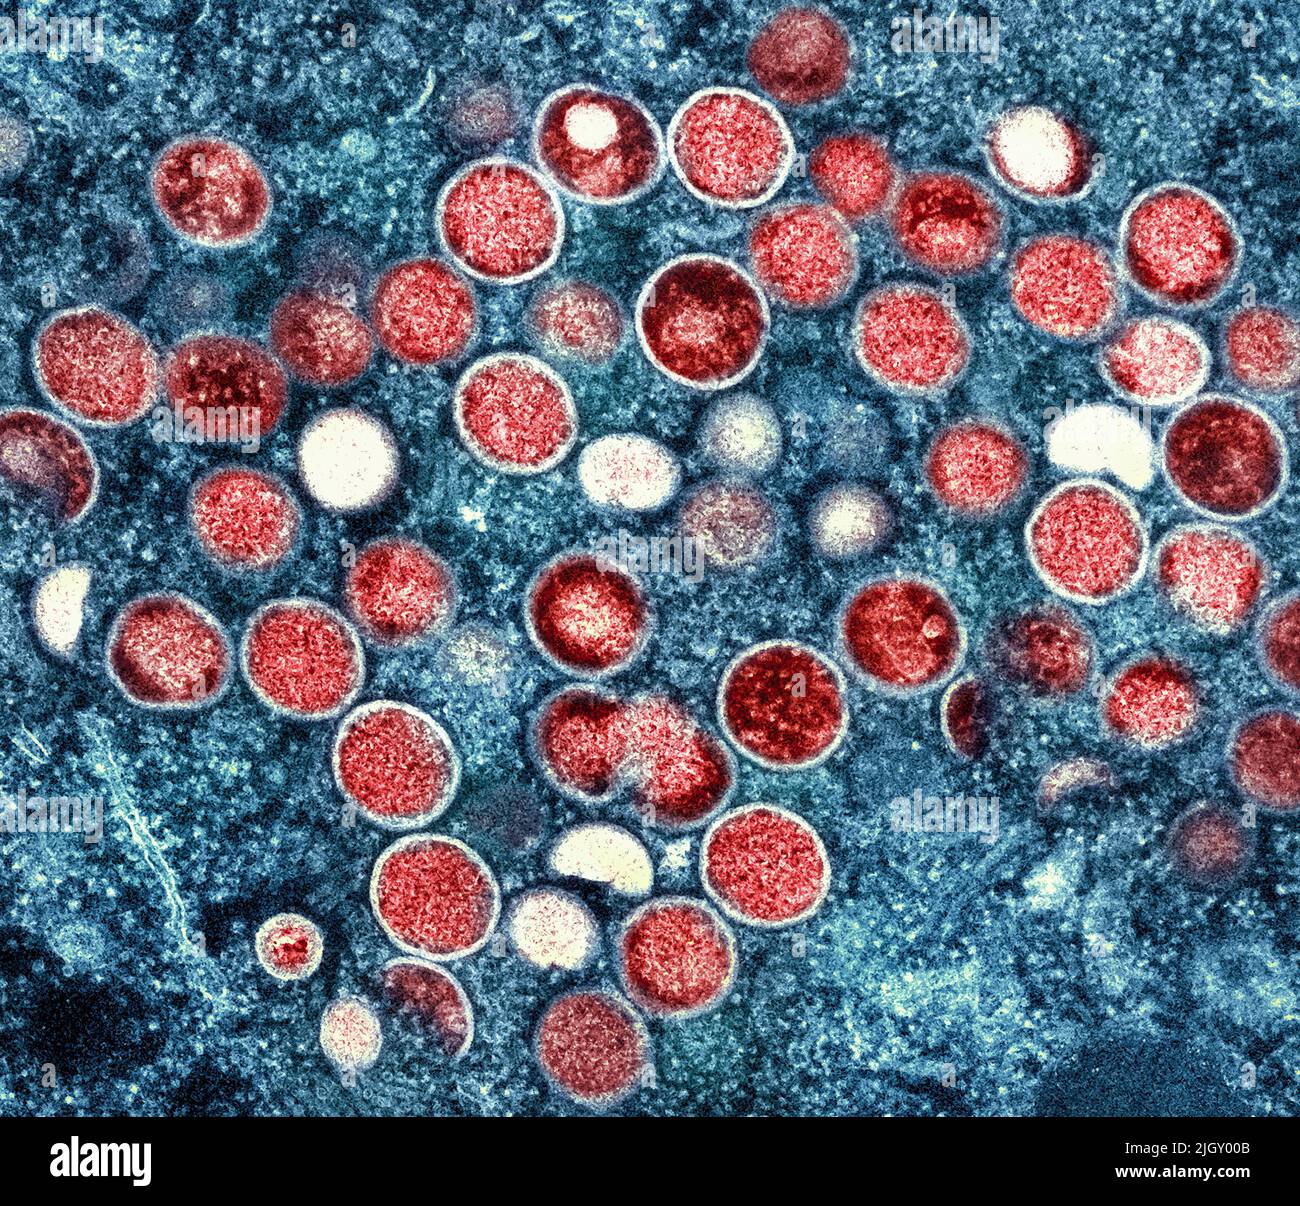 Monkeypox. Micrografia elettronica a trasmissione colorata di particelle di virus Nipah extracellulari (rosse) mature vicino alla periferia di una cellula di vero infettata (blu e verde). Immagine catturata presso lo stabilimento di ricerca integrato NIAID di Fort Detrick, Maryland. Credit NIAID Monkeypox è una malattia virale infettiva che può verificarsi negli esseri umani e in alcuni altri animali.i sintomi includono febbre, linfonodi gonfi, e un rash che forma vescicole e poi croste sopra. Il tempo che va dall'esposizione all'insorgenza dei sintomi varia da 5 a 21 giorni. La durata dei sintomi è tipicamente da 2 a 4 settimane. Foto Stock